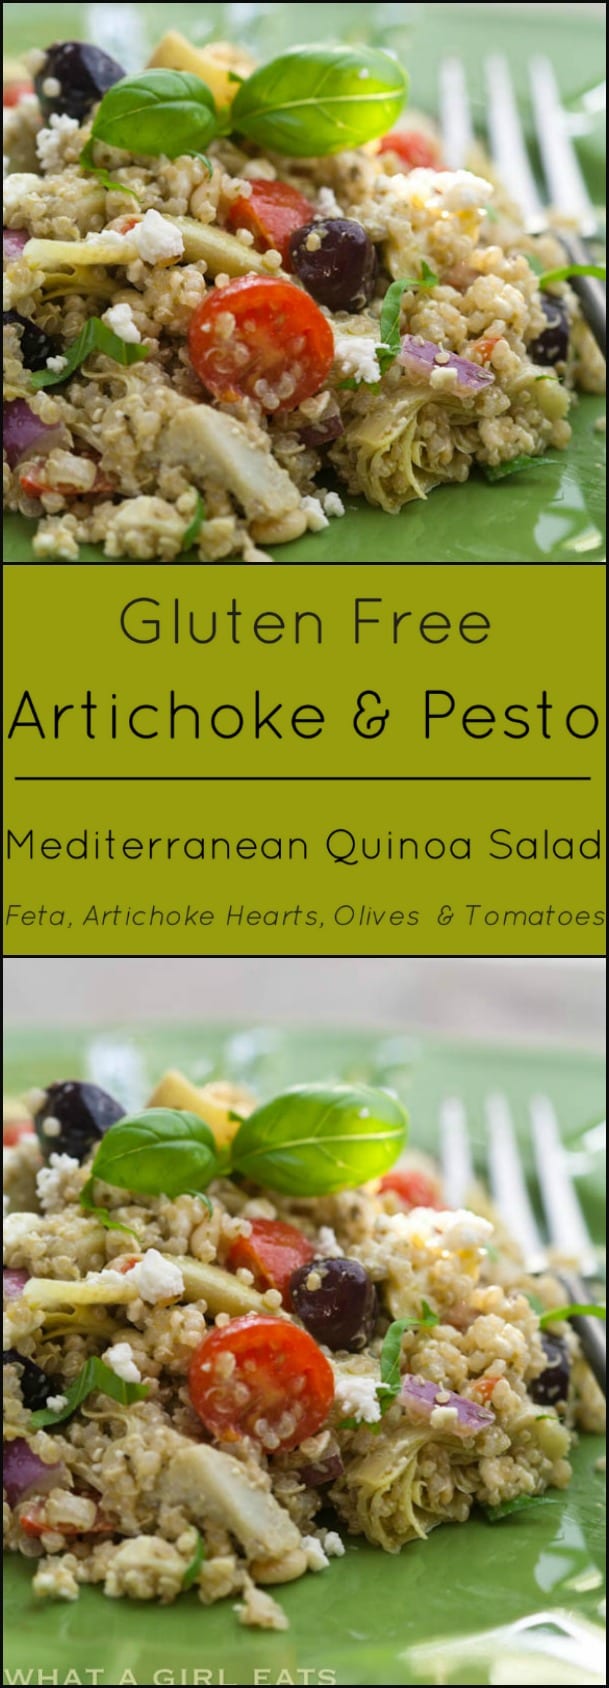 Gluten free quinoa mediterranean salad.